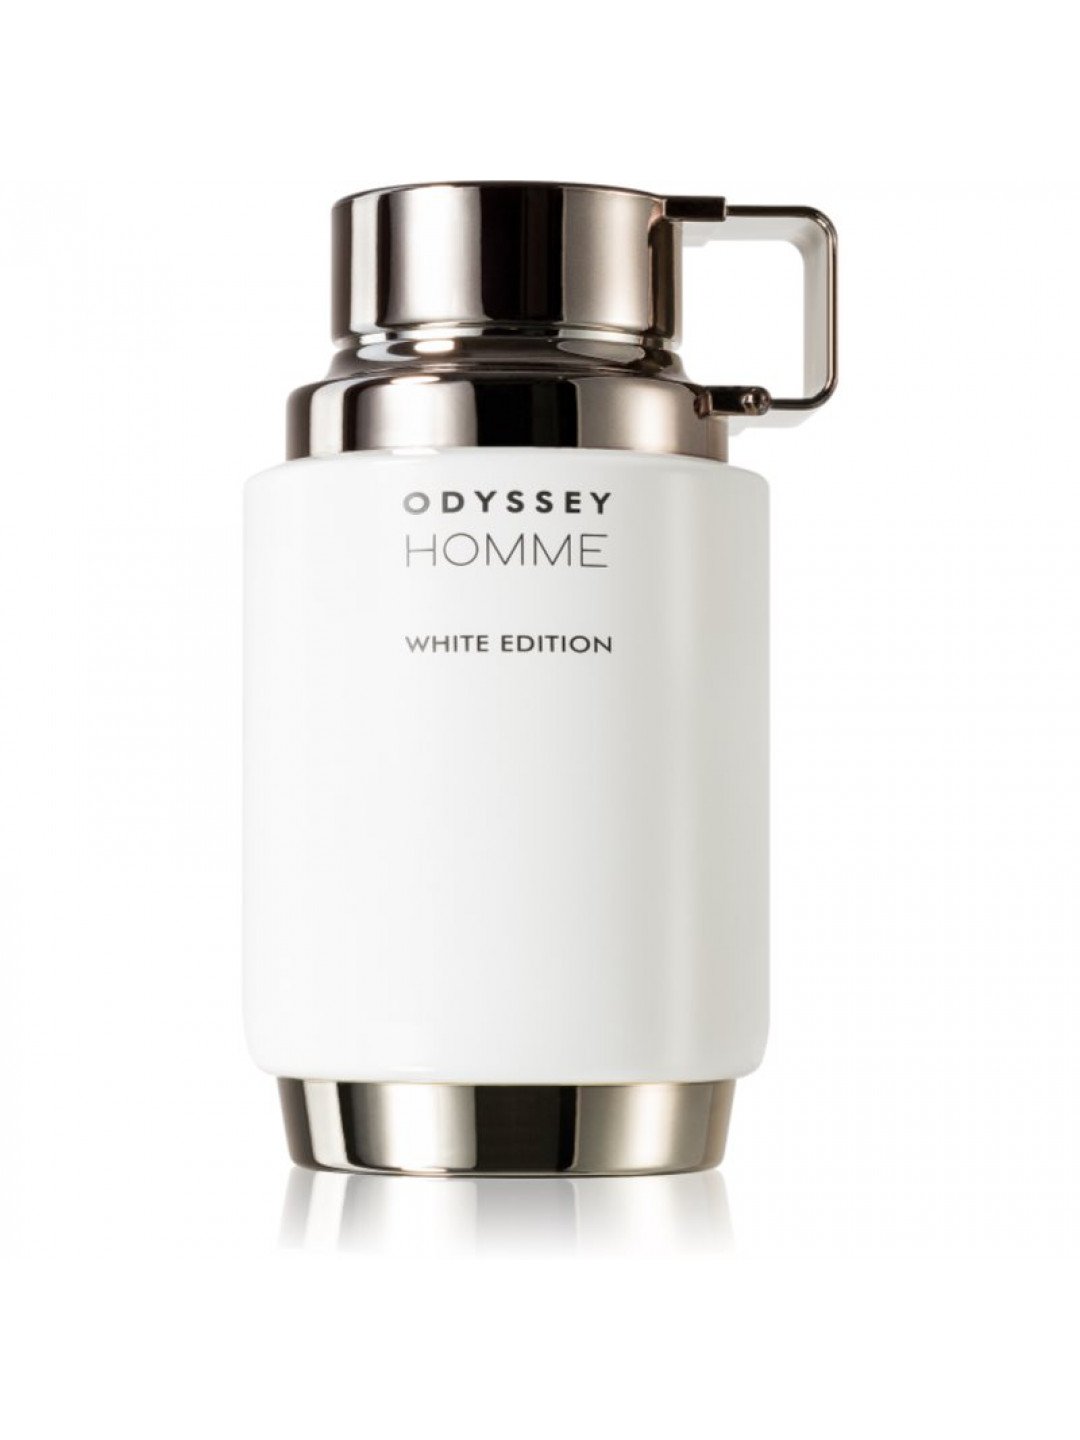 Armaf Odyssey Homme White Edition parfémovaná voda pro muže 200 ml